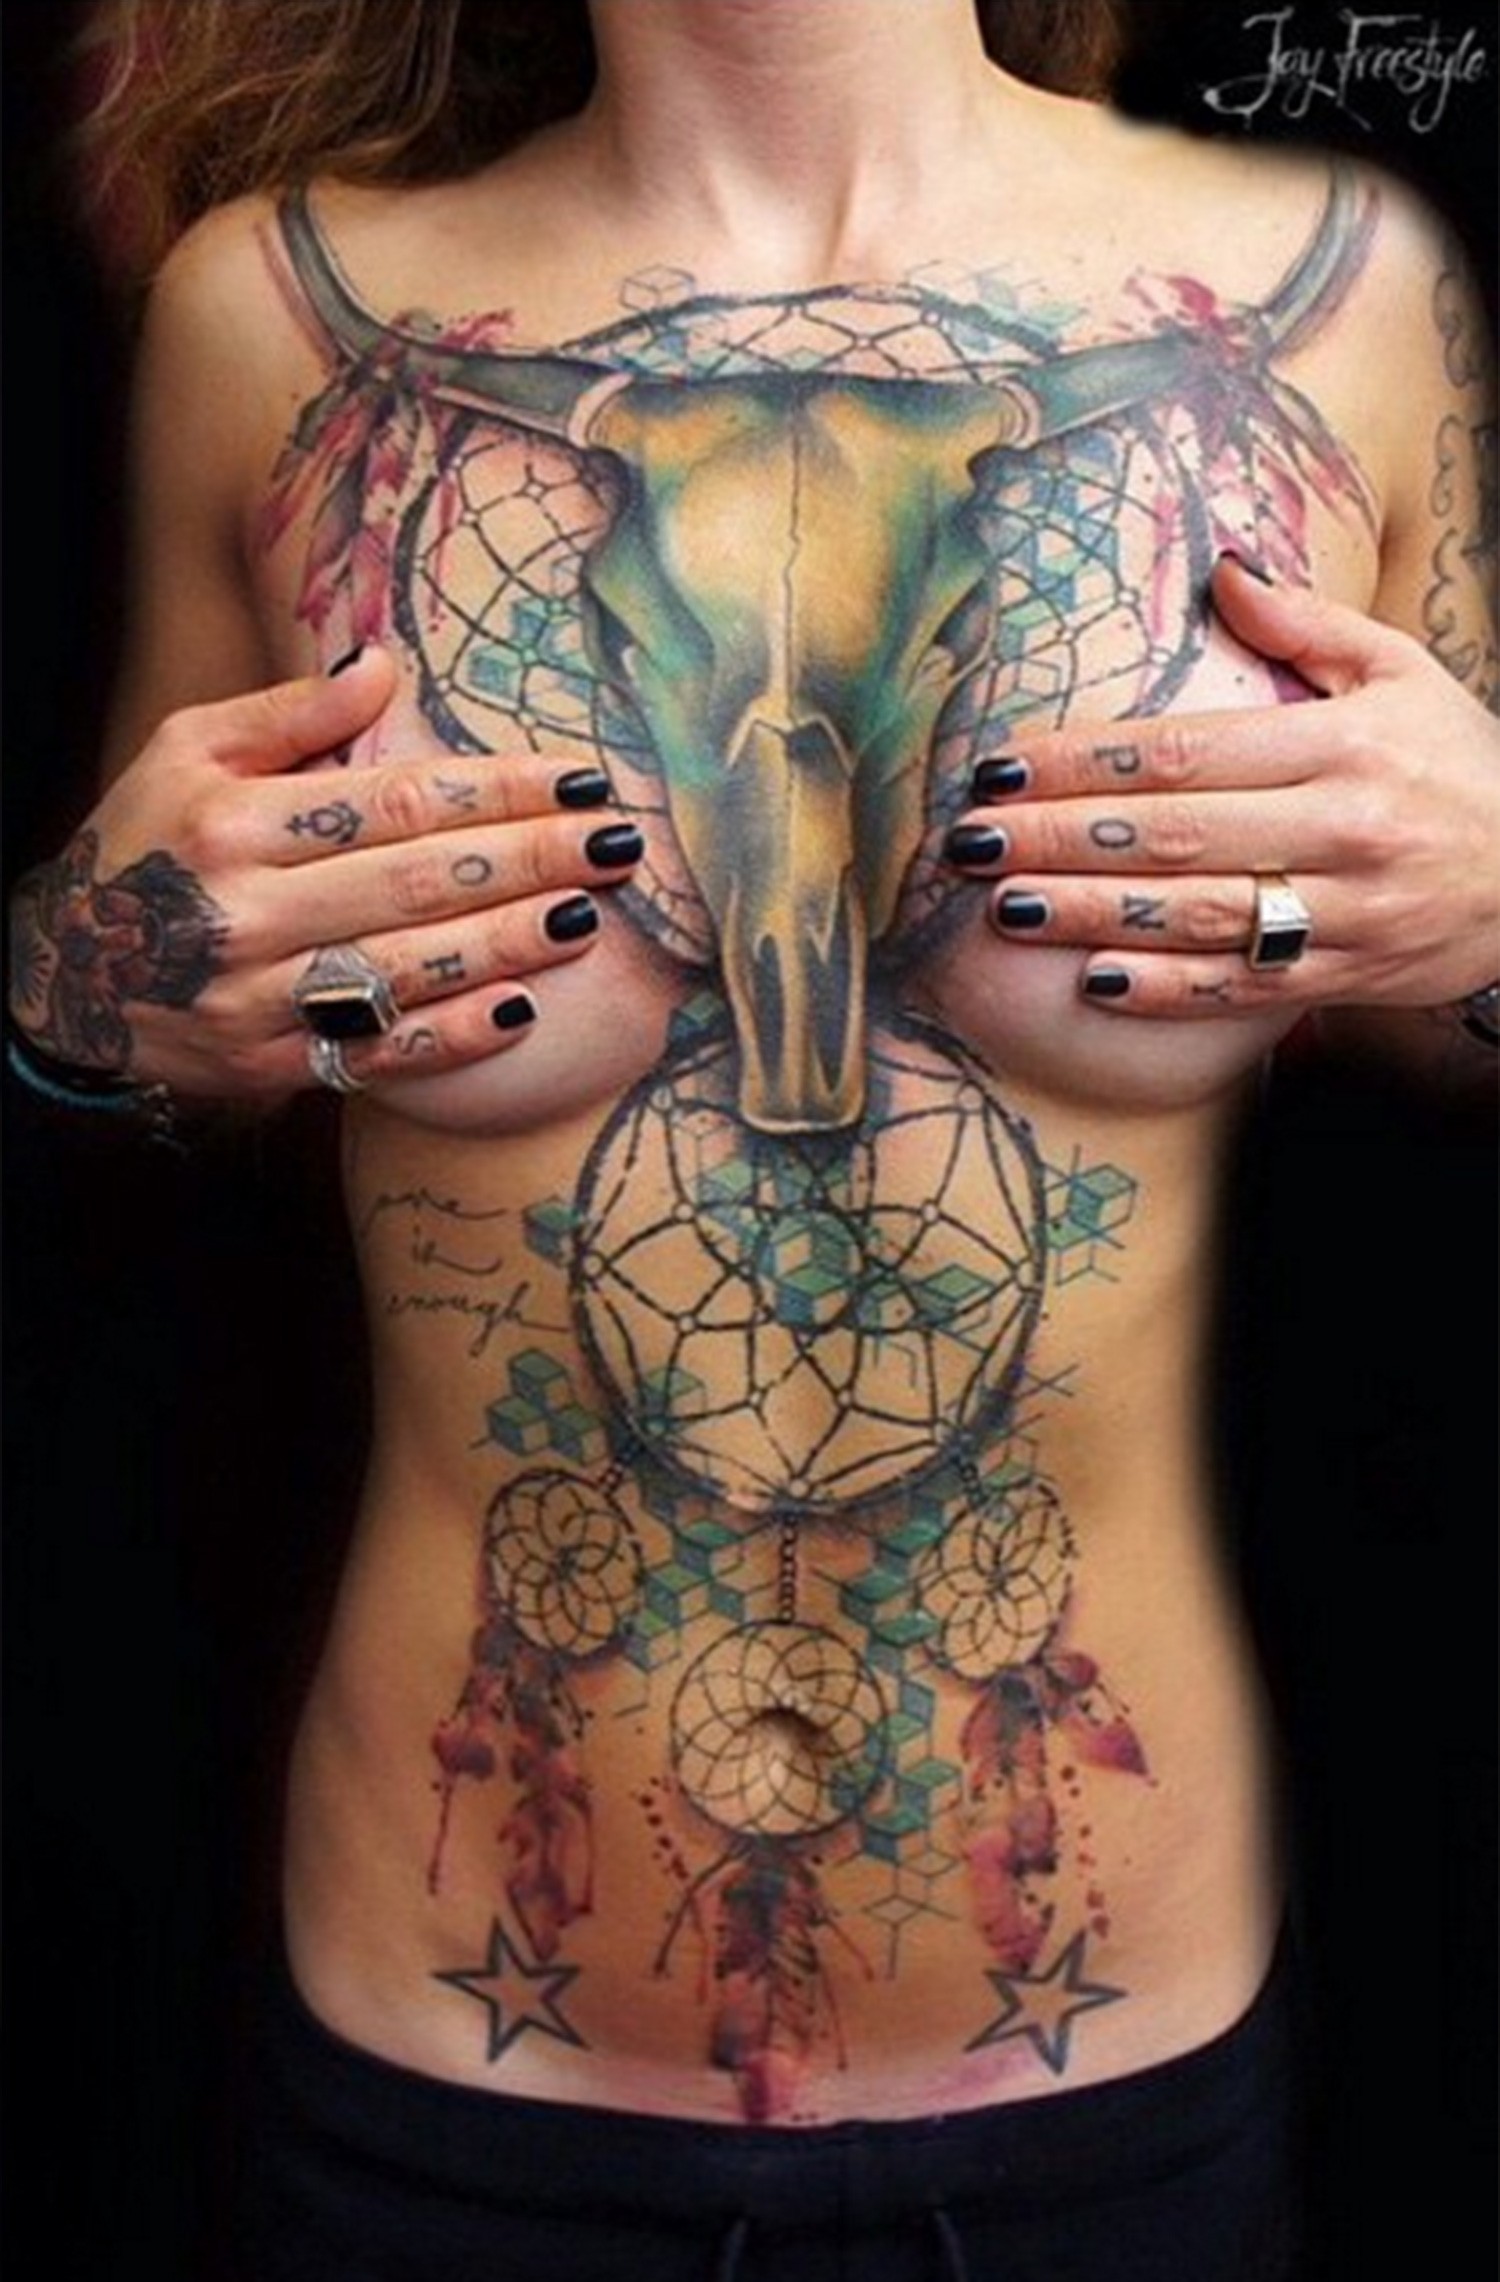 Woman boob tattoos